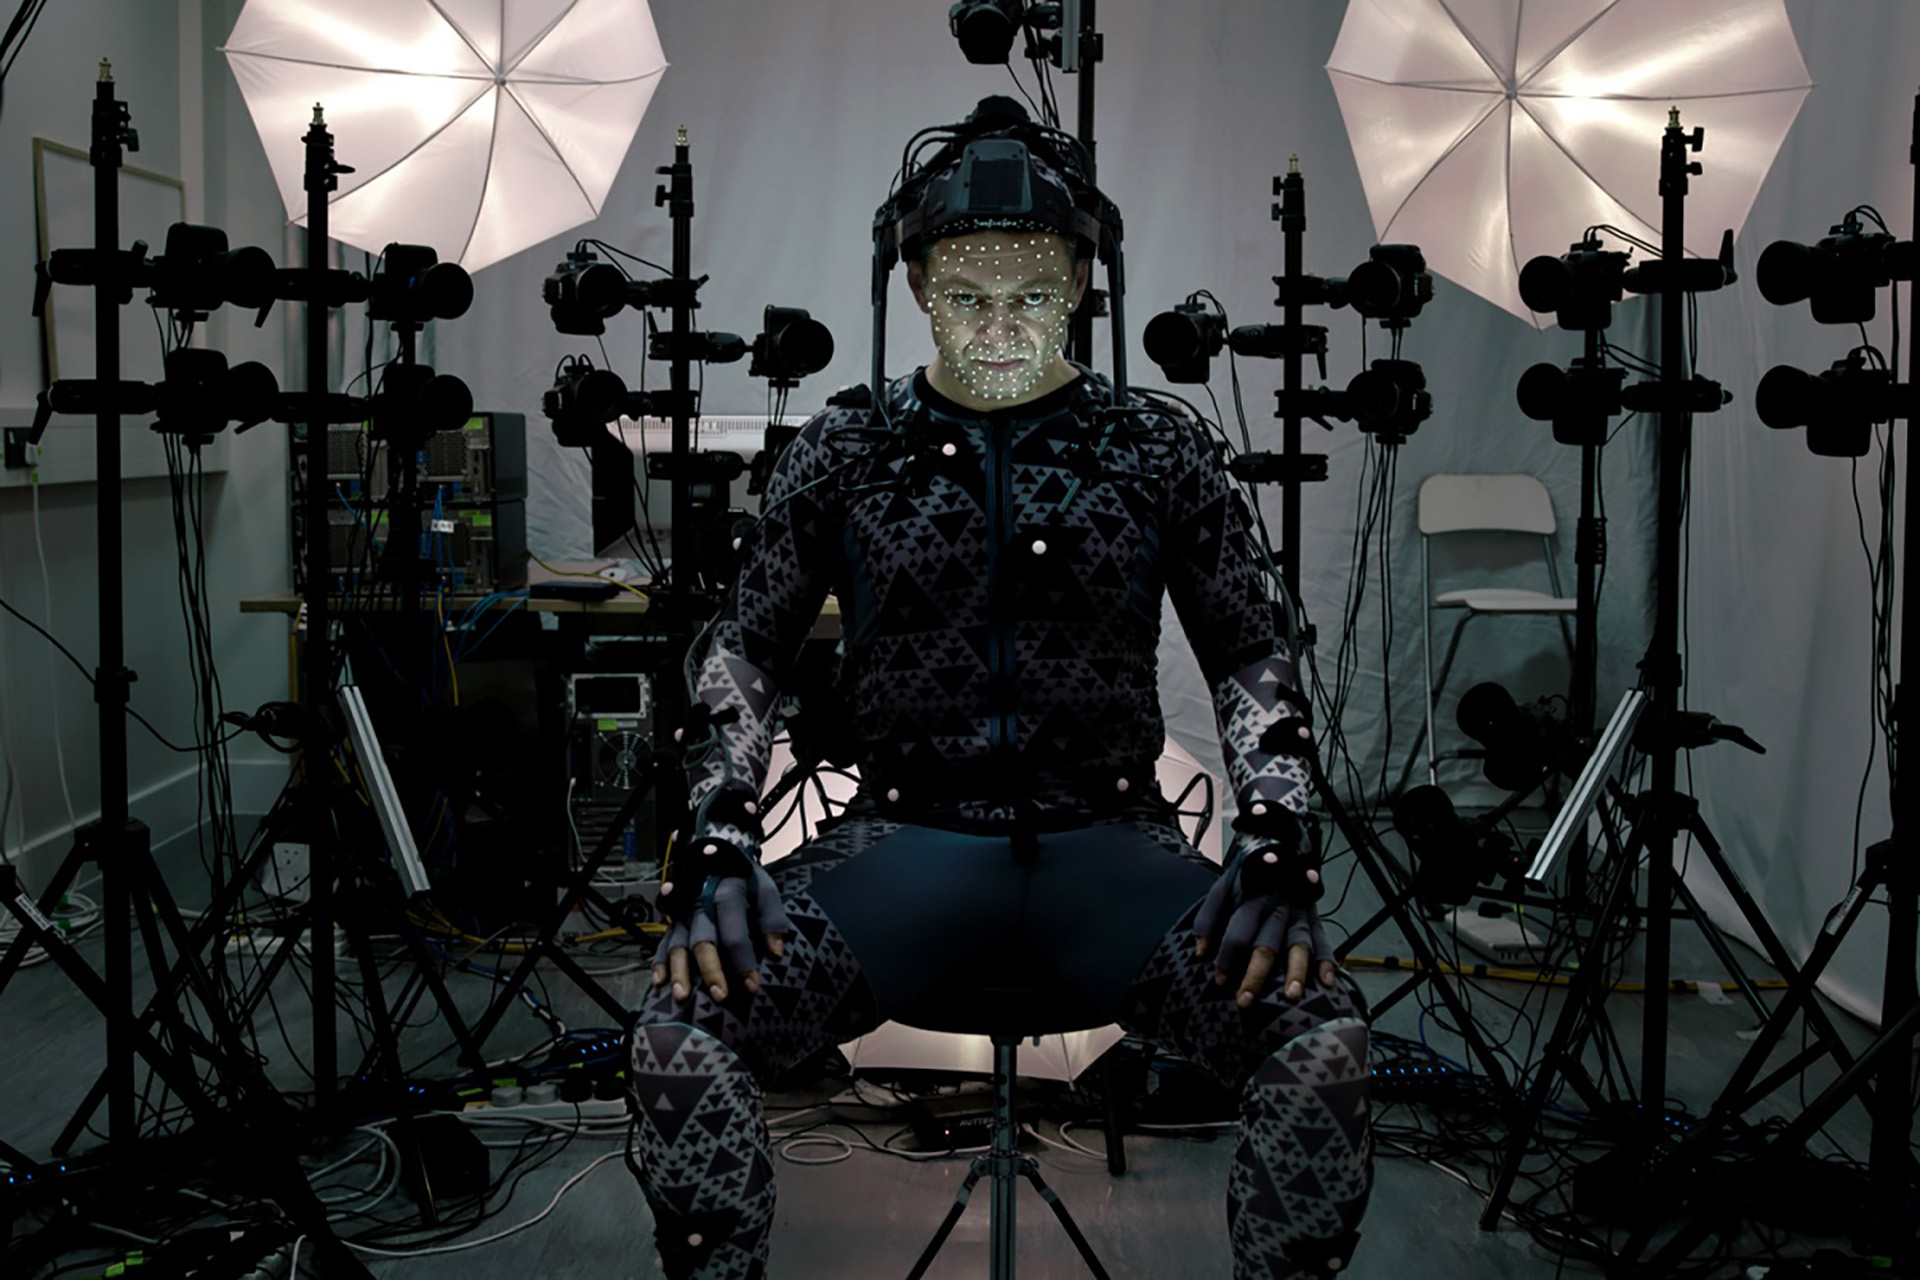 Энди Серкис на съёмках эпической космической оперы «Звёздныее войны» в роли лидера Сноука